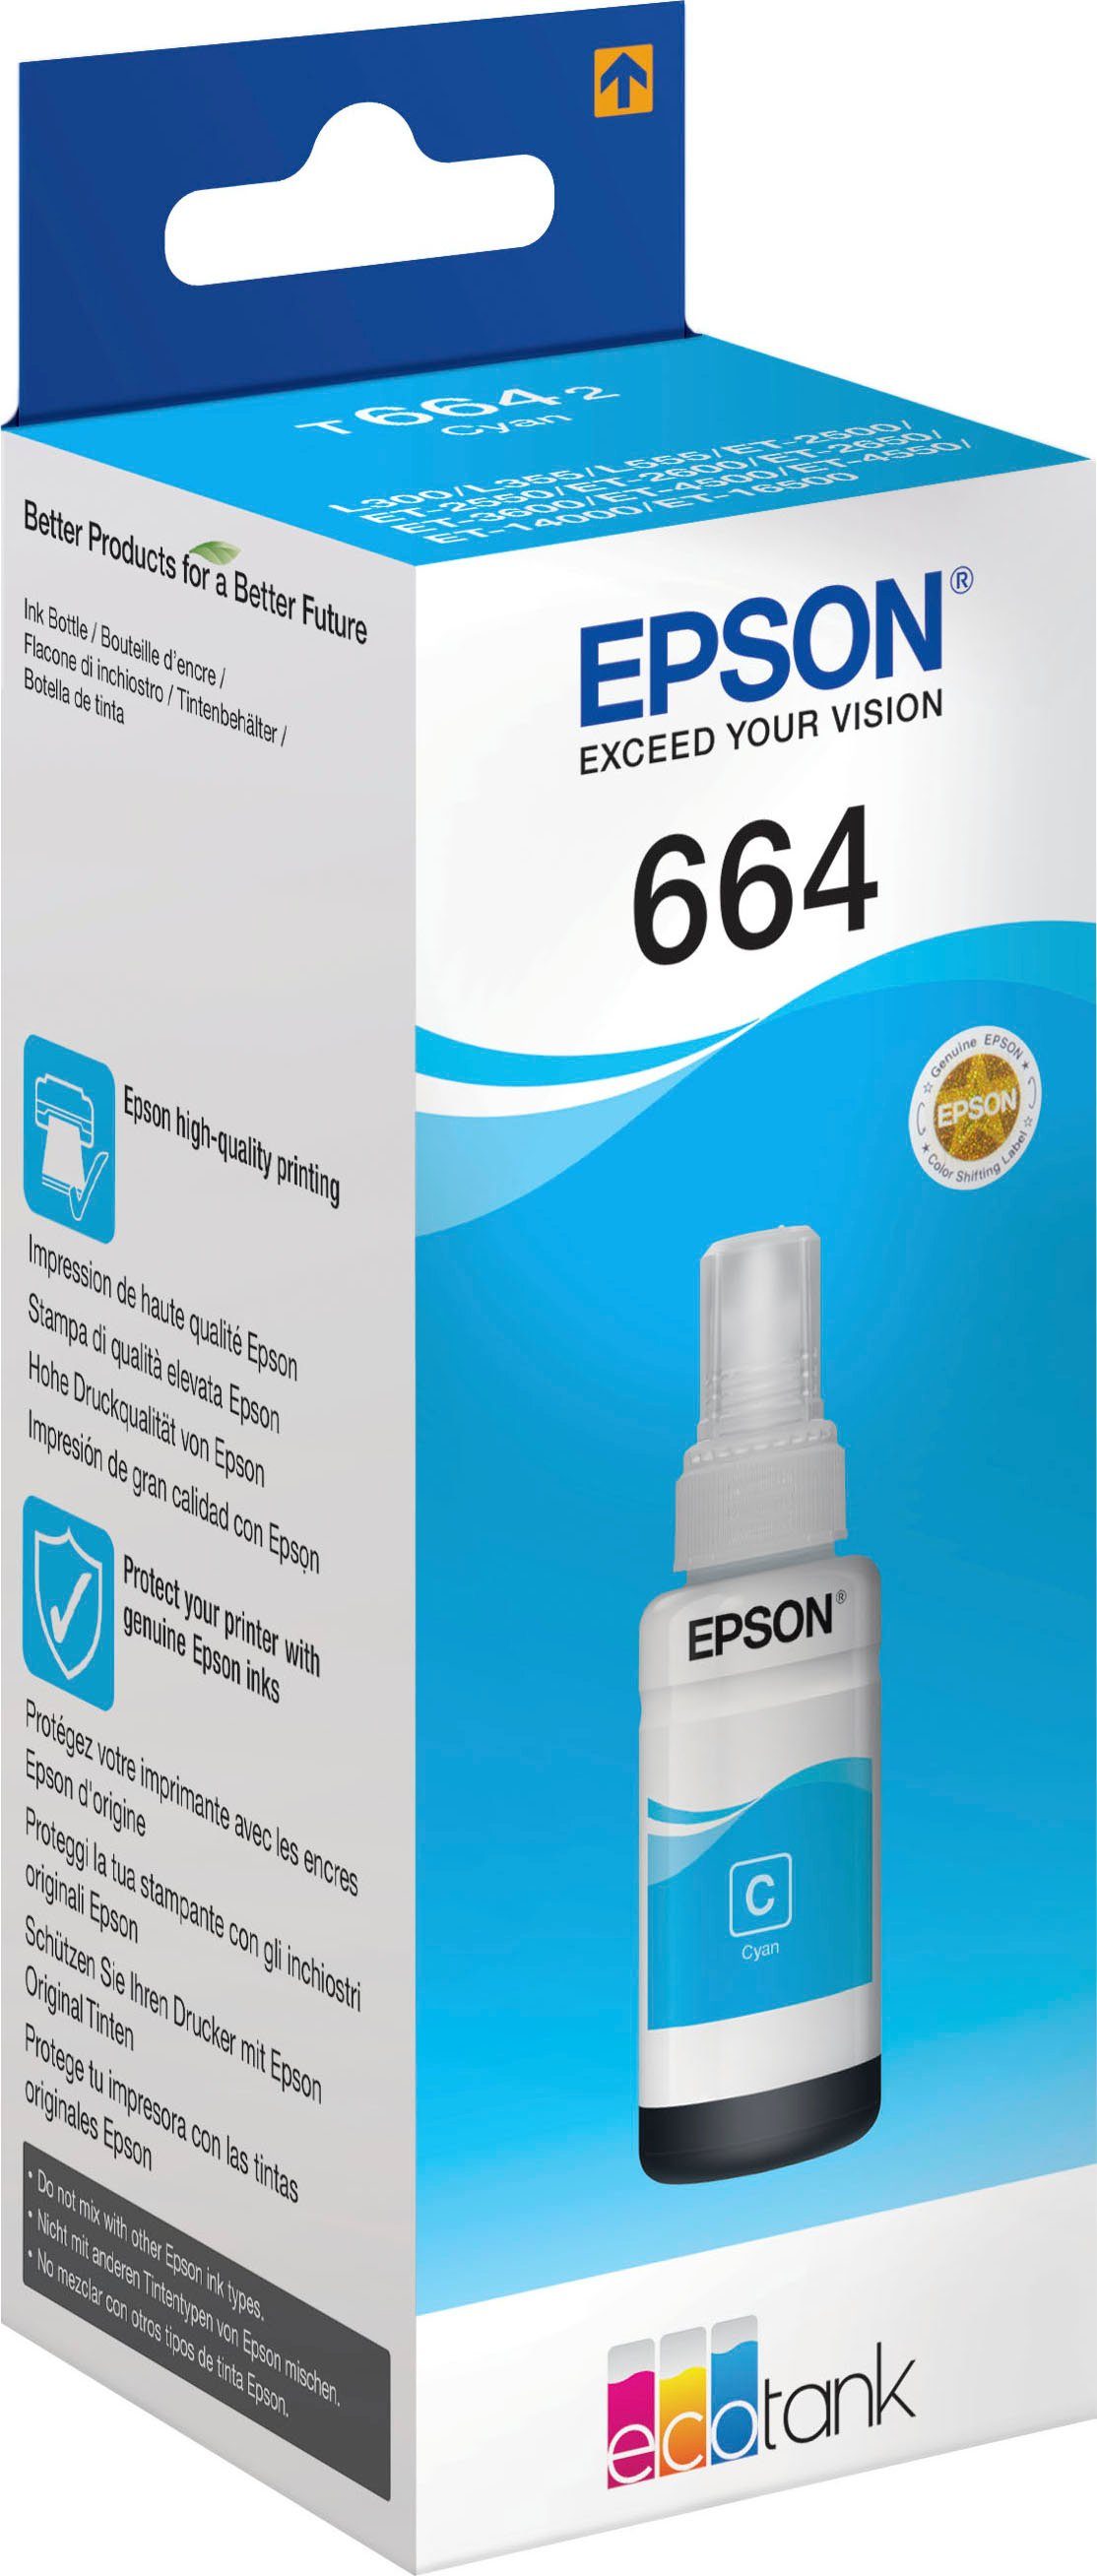 Epson Nachfülltinte 664 1x, original EPSON, cyan) (für Nachfülltinte T6642